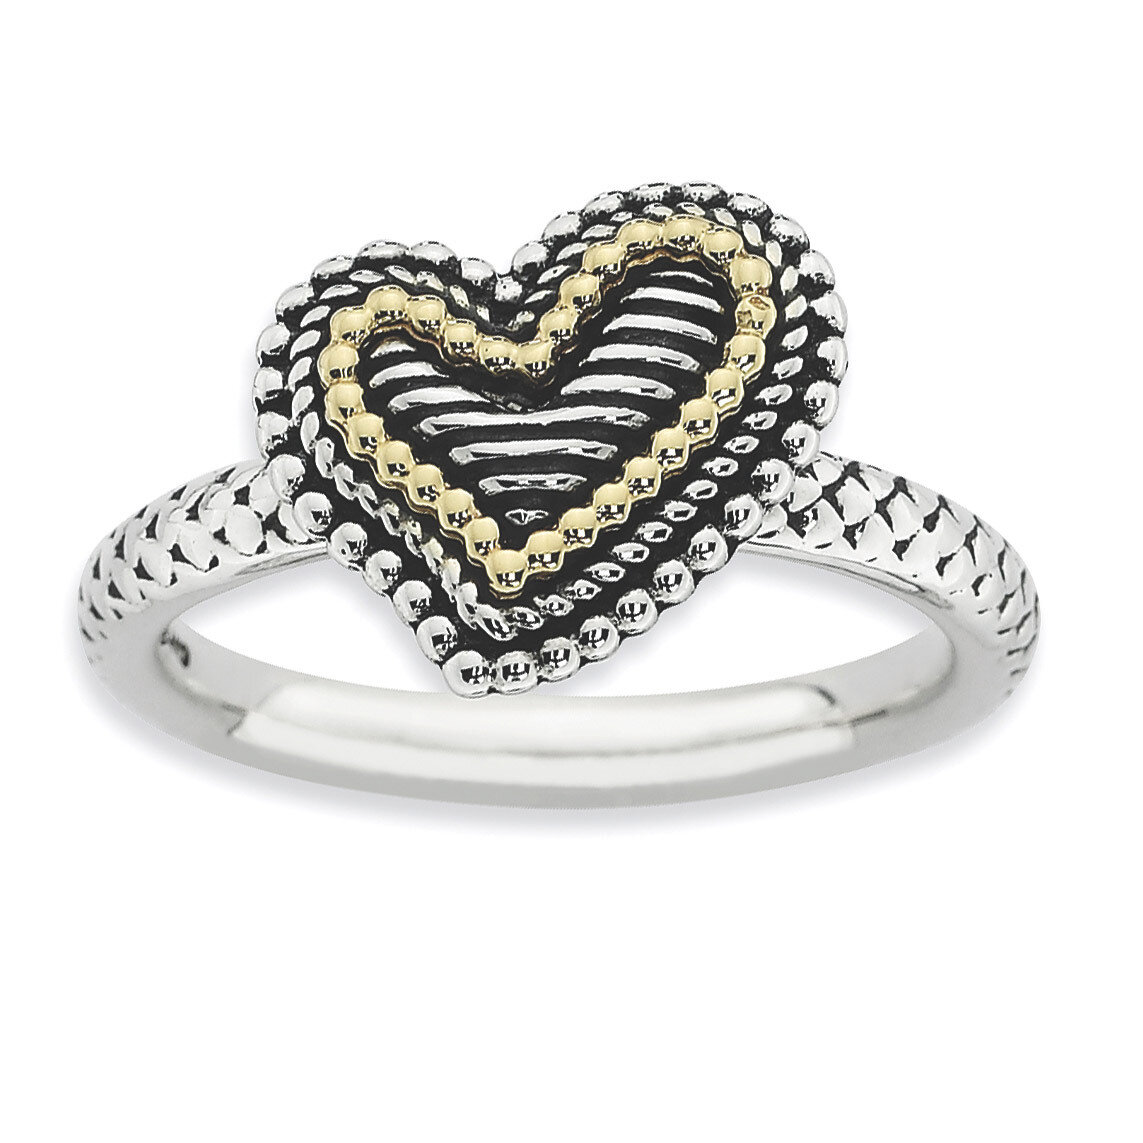 14k Gold Antiqued Heart Ring - Sterling Silver QSK864